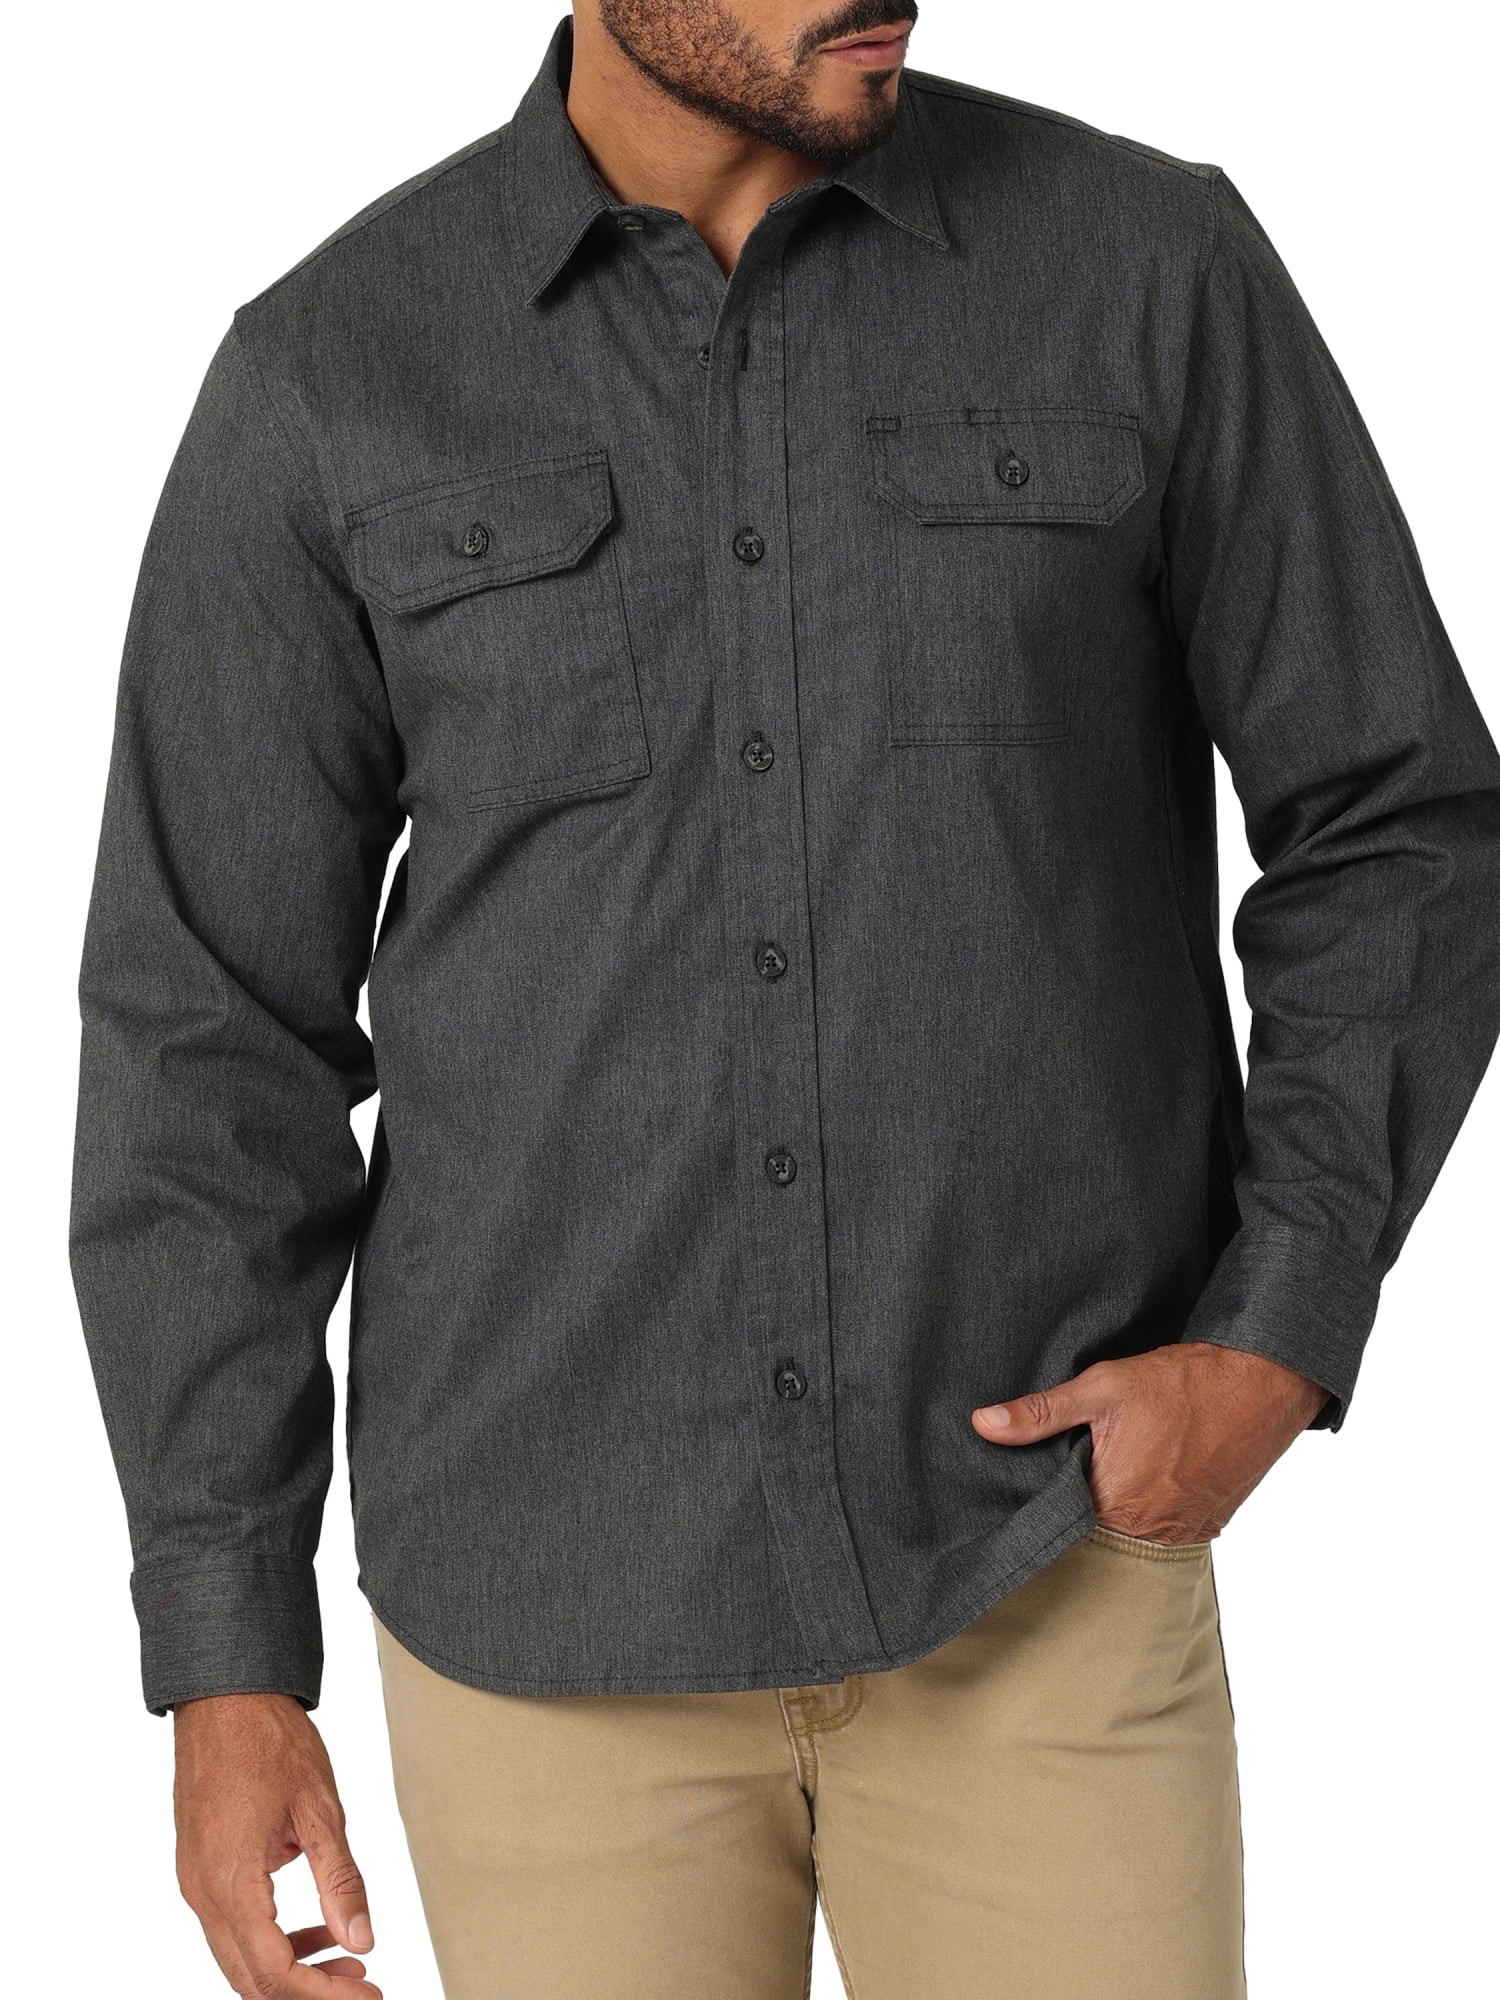 Wrangler Men's Short Sleeve Woven Shirt, Sizes S-5XL –